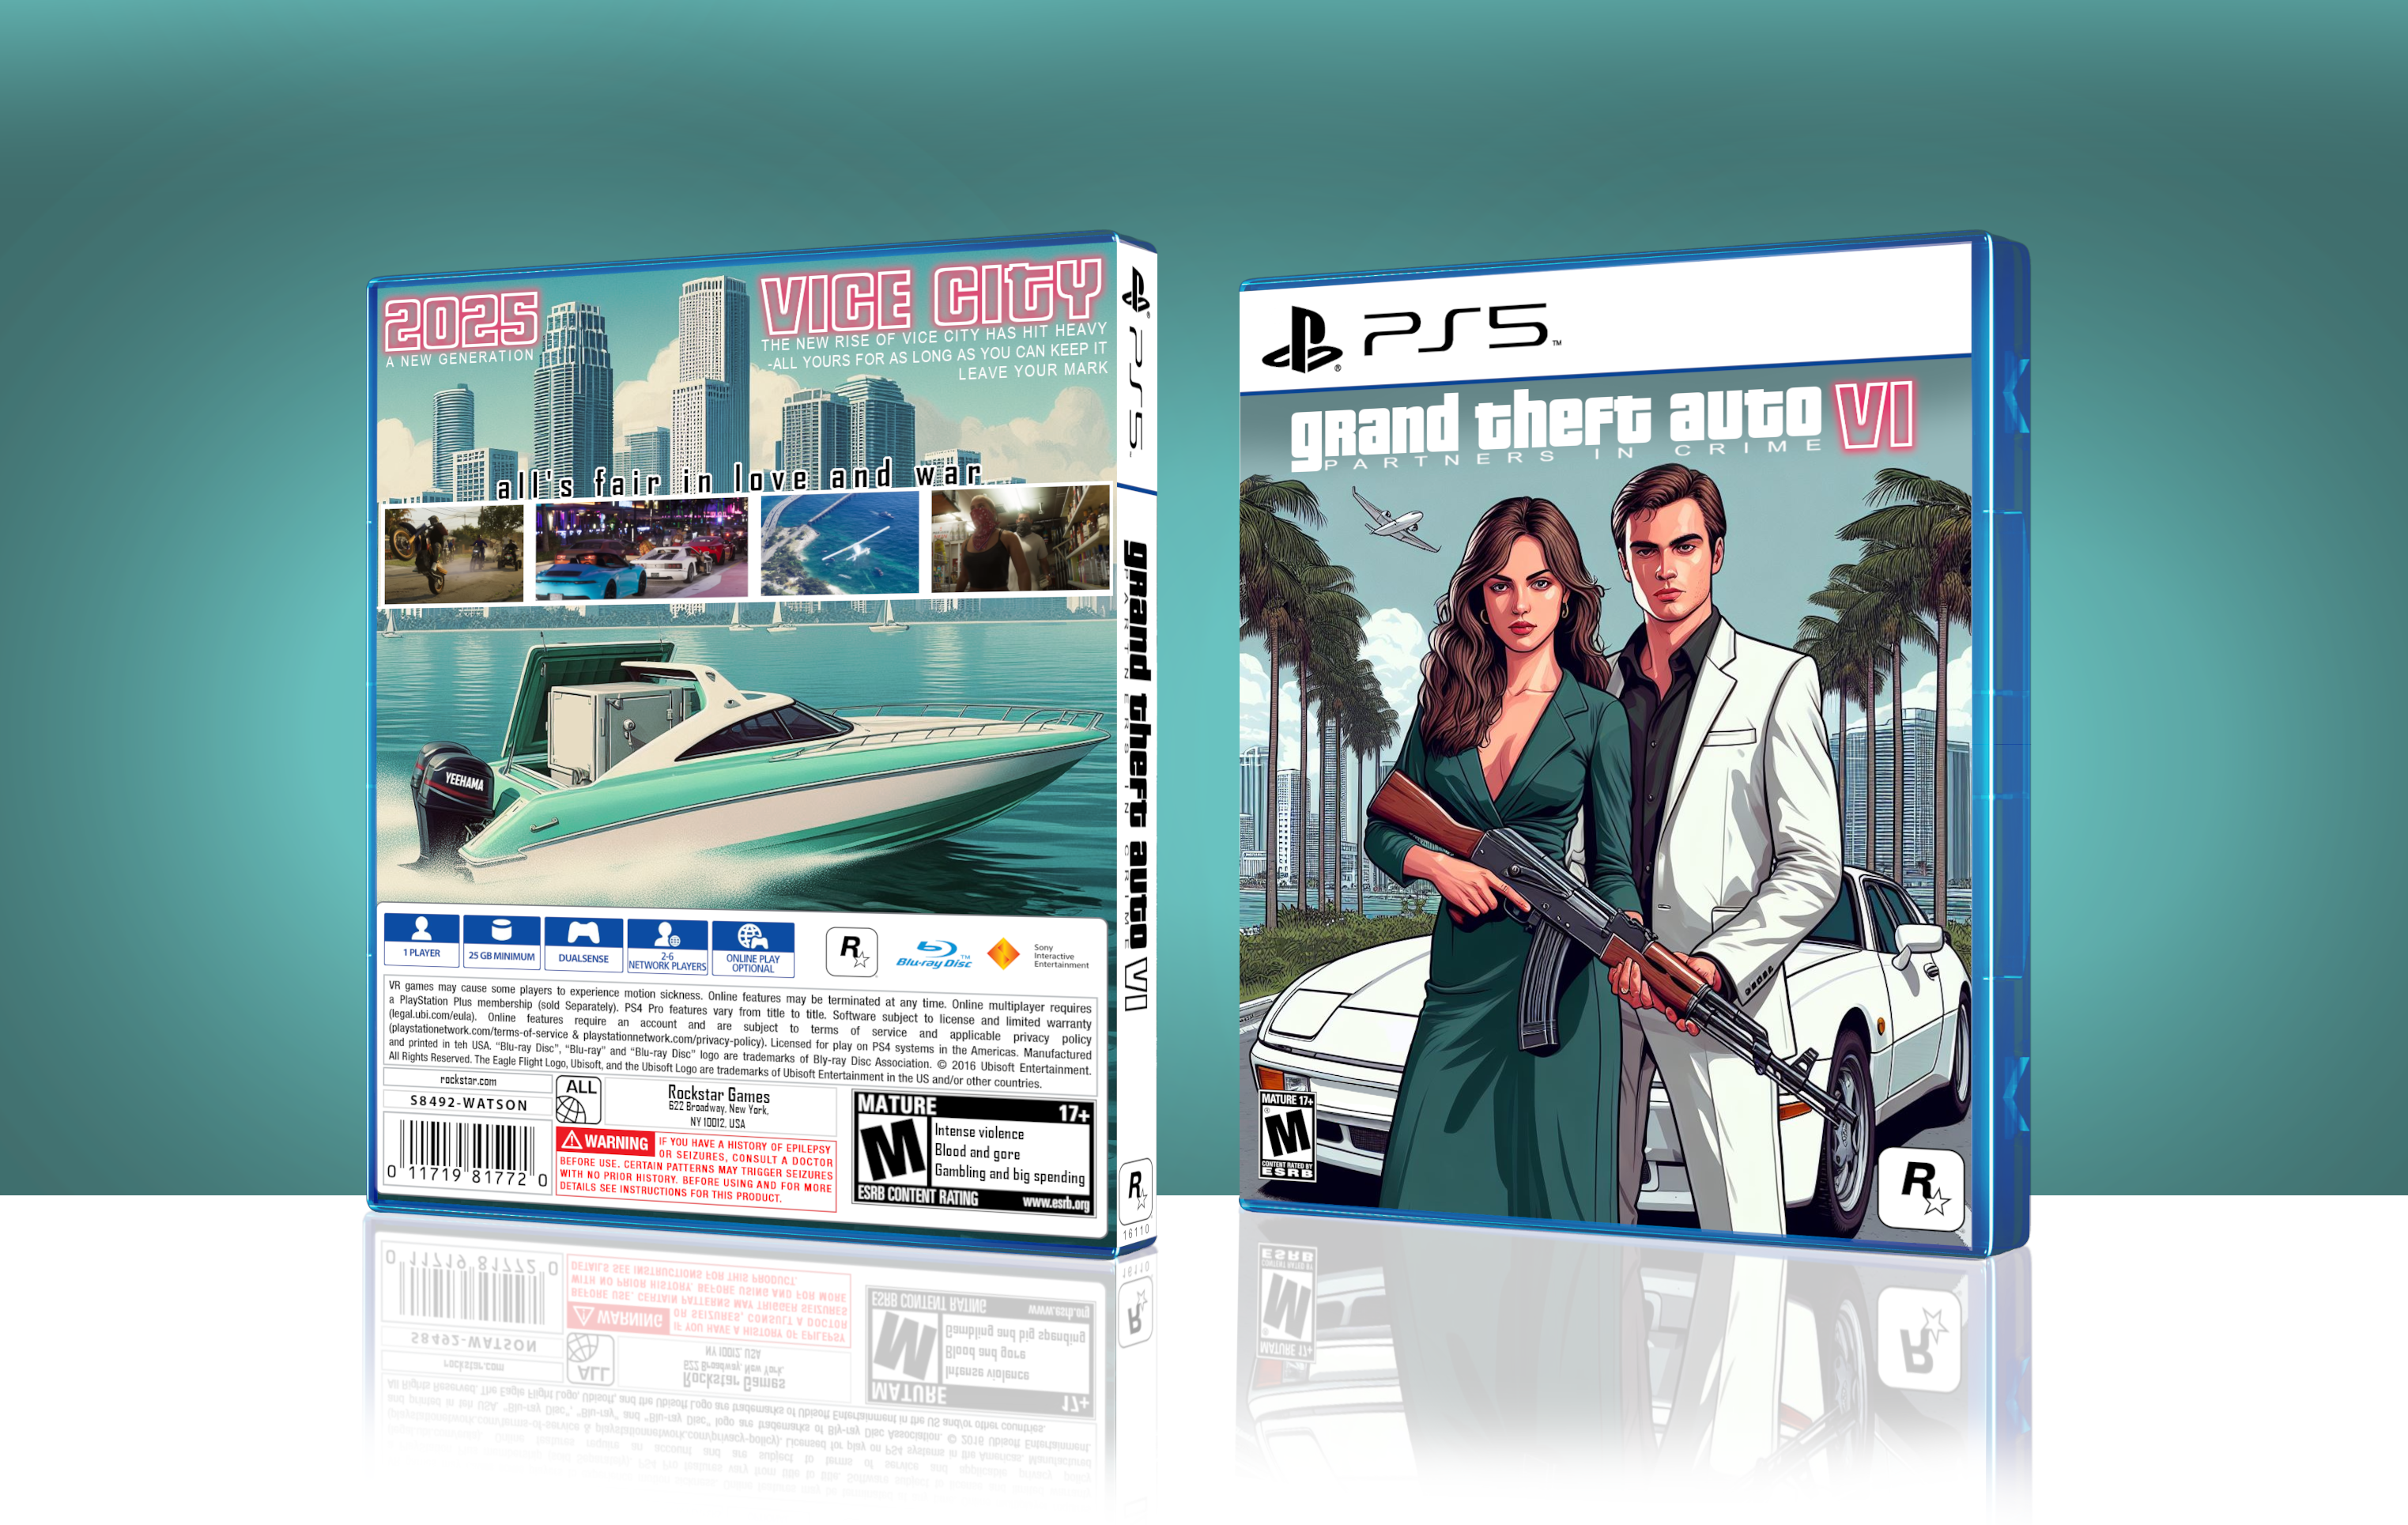 Grand Theft Auto VI box cover